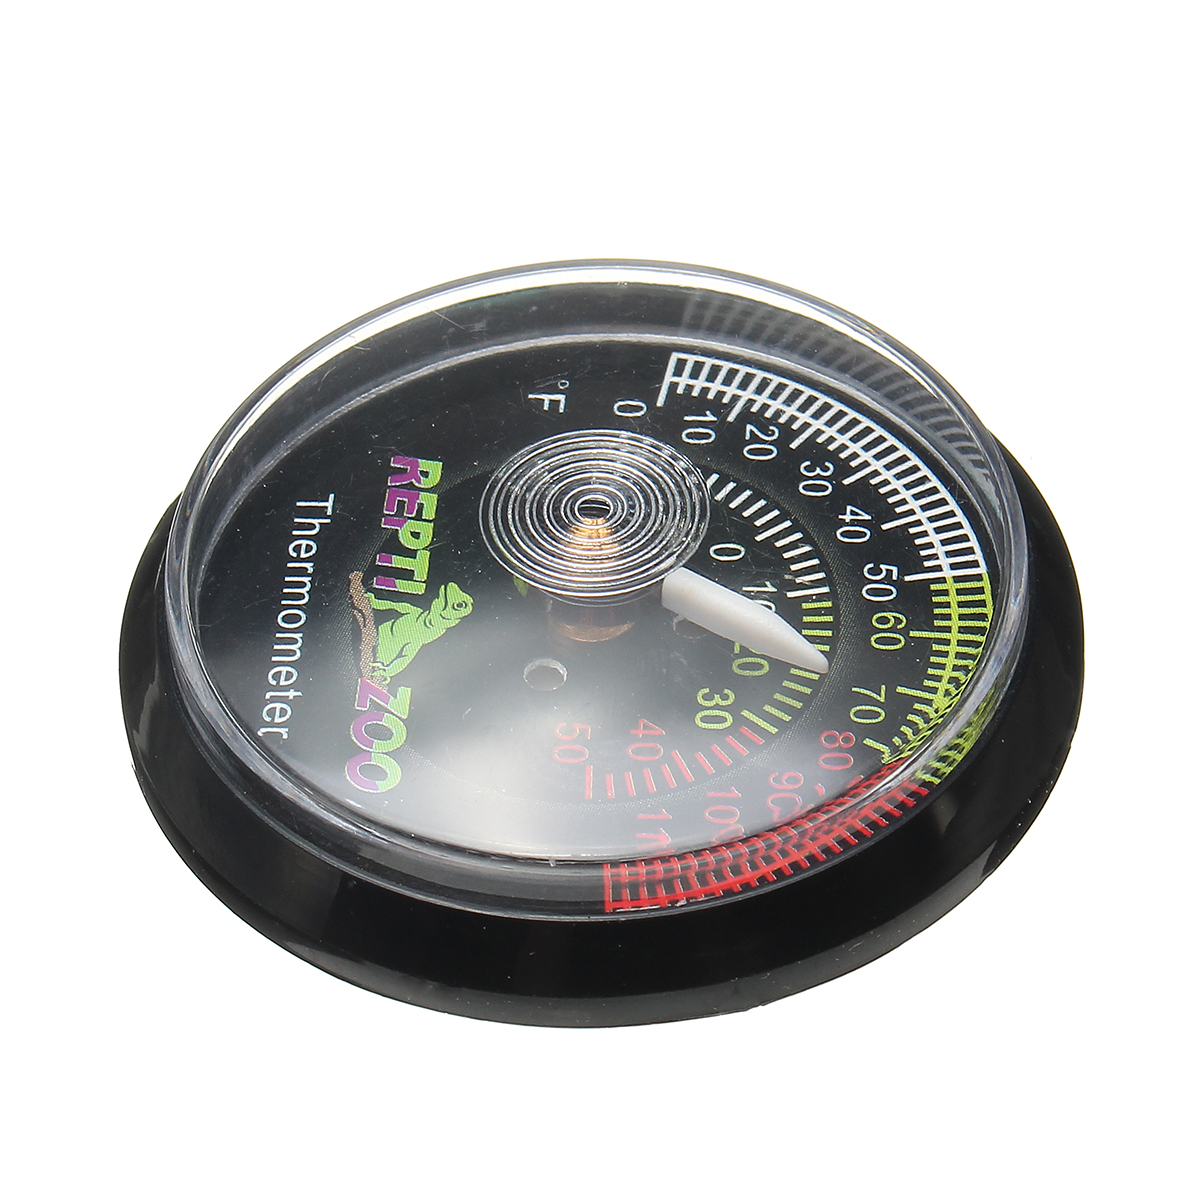 Reptile-Tortoise-Vivarium-Terrarium-Temperature-Meter-Thermometer-with-Colour-Codes-1263986-8